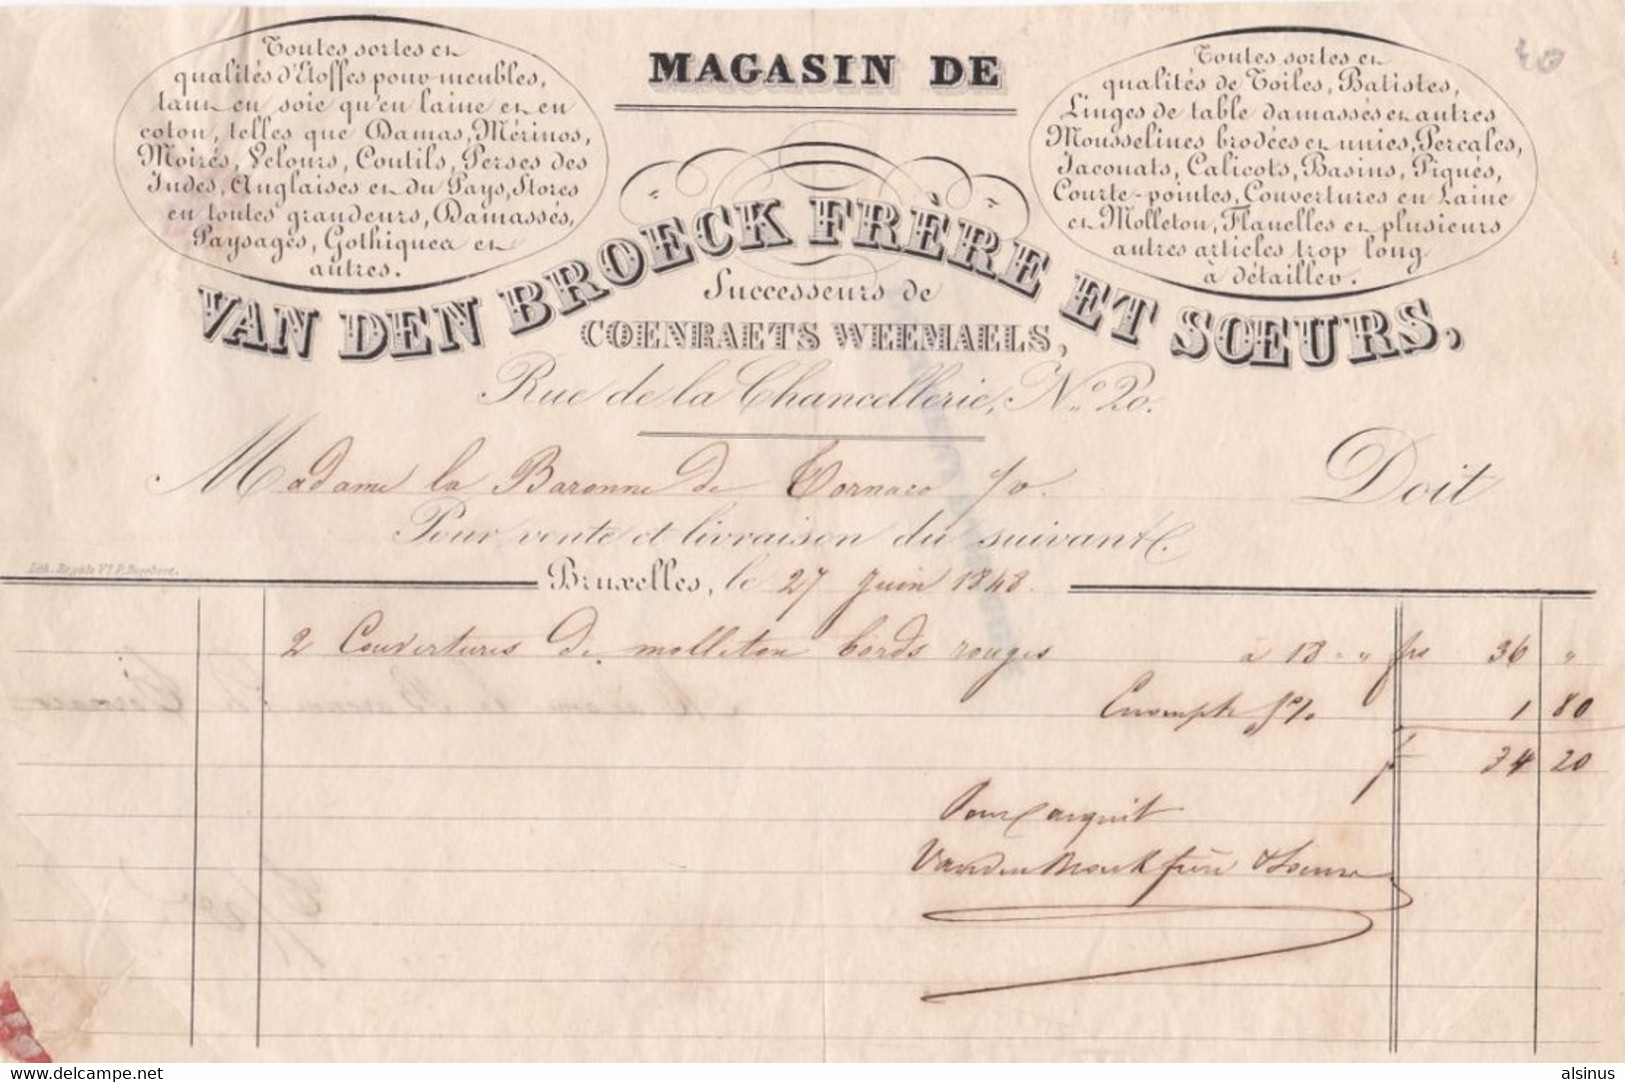 BRUXELLES - FACTURE DE 1848 ADRESSEE A MADAME LA BARONNE DE TORNARO - MAGASIN VAN DEB BROECK FRERE ET SOEURS - Textile & Vestimentaire